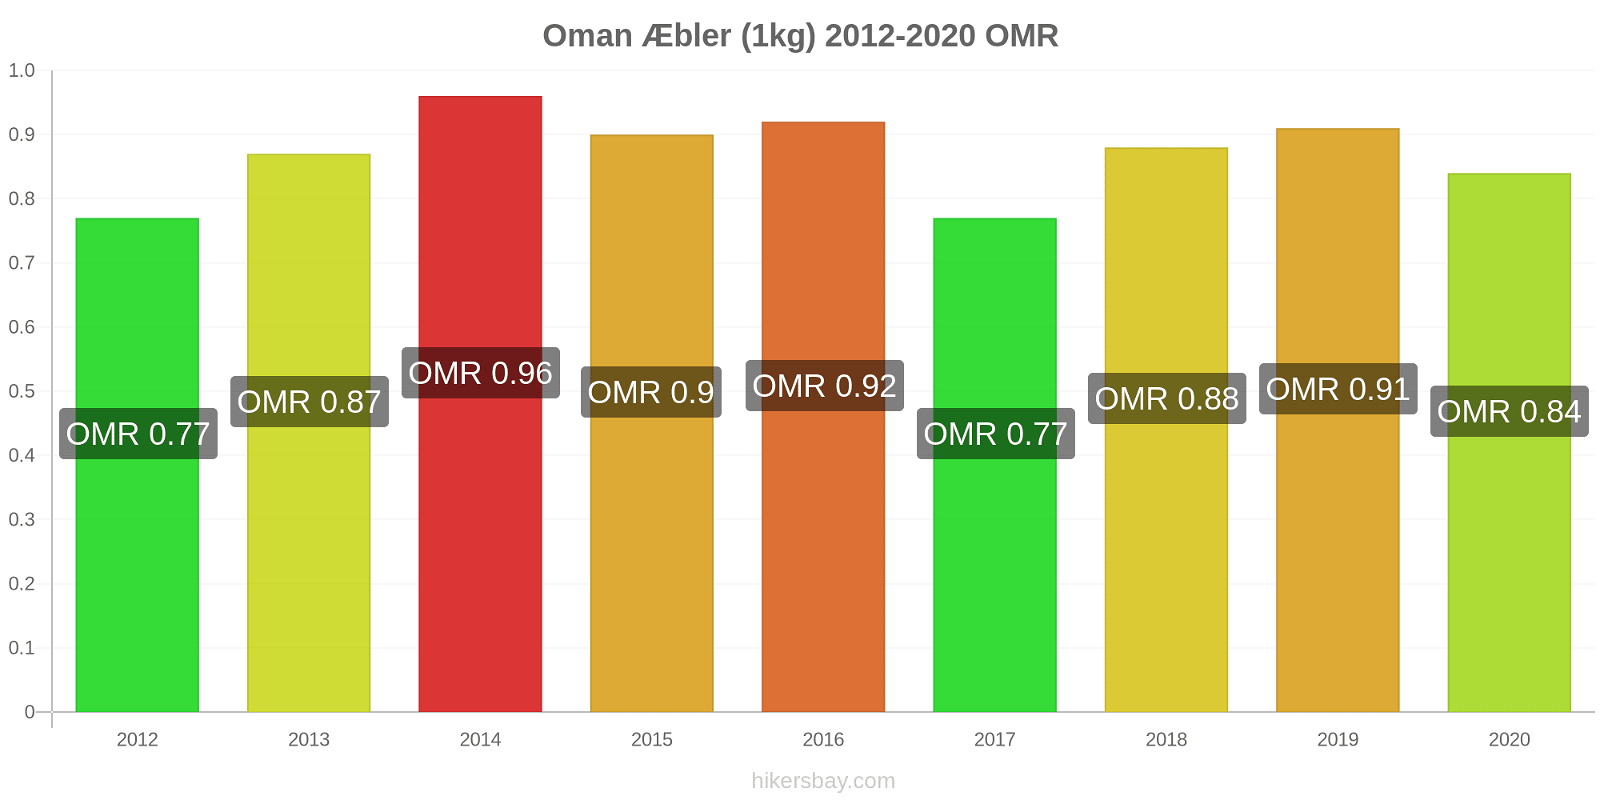 Oman prisændringer Æbler (1kg) hikersbay.com